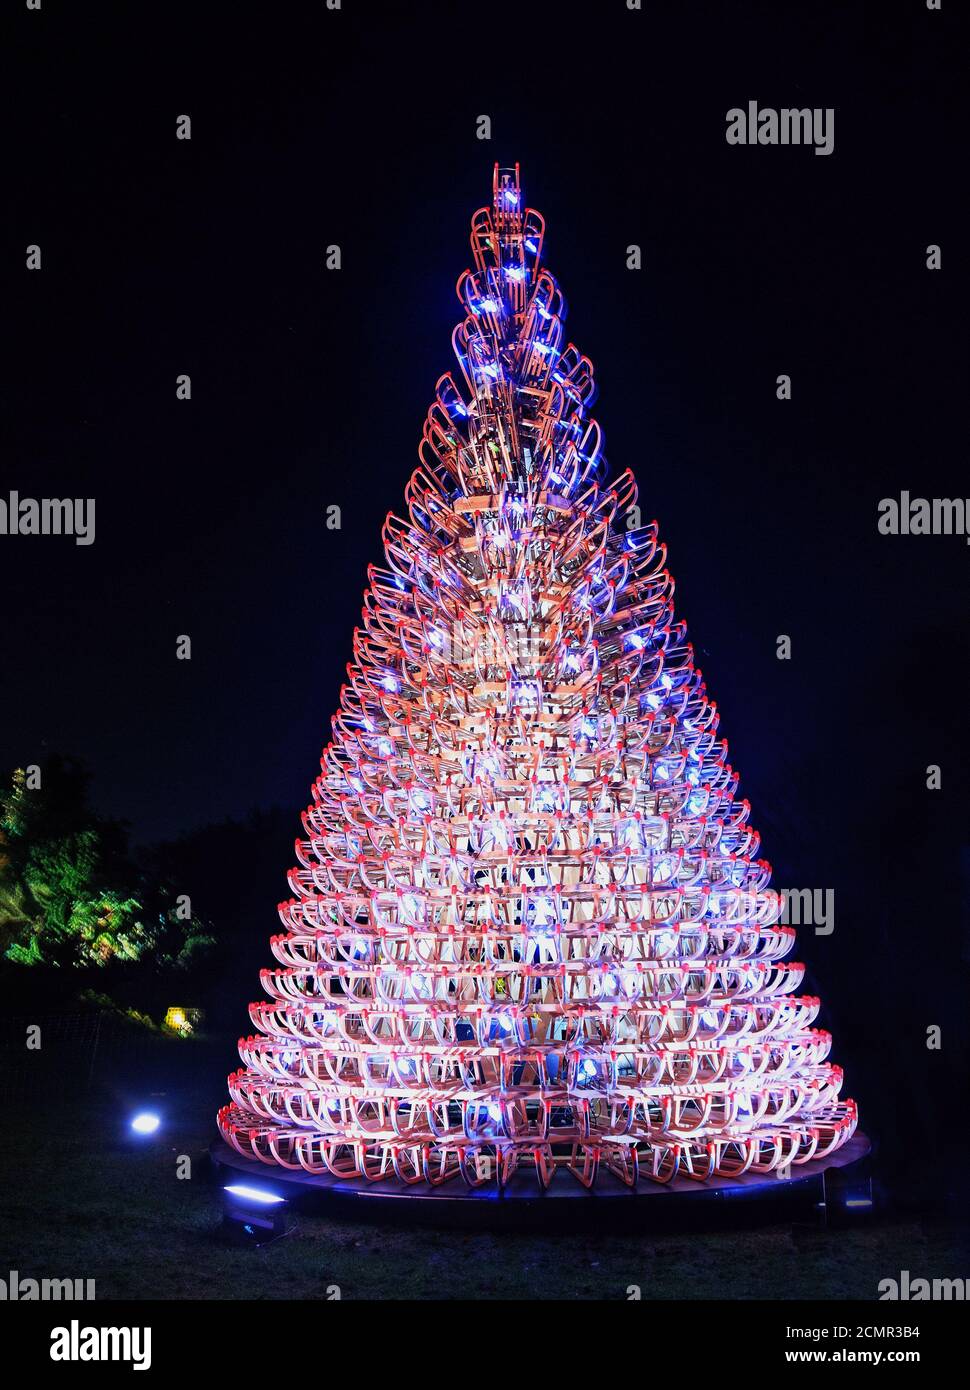 Kew Gardens, London, Dezember 2018. Weihnachtsbaum aus recycelten Flaschen alle hell beleuchtet Stockfoto